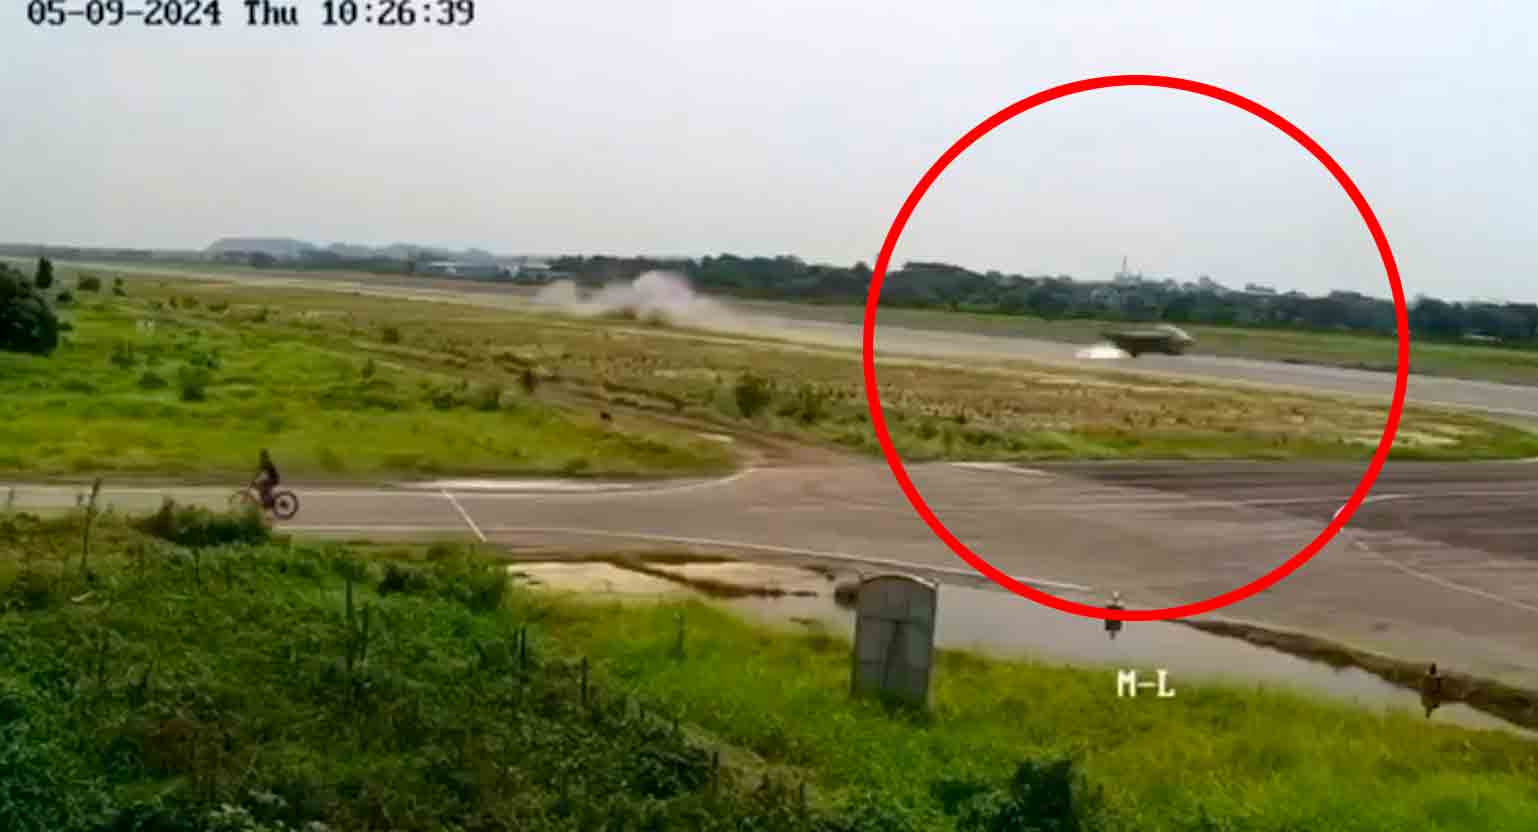 Video: Caza Yak-130 de la Fuerza Aérea de Bangladesh cae justo después de un error del piloto en una maniobra arriesgada. Foto: Reproducción Twitter @RealAirPower1